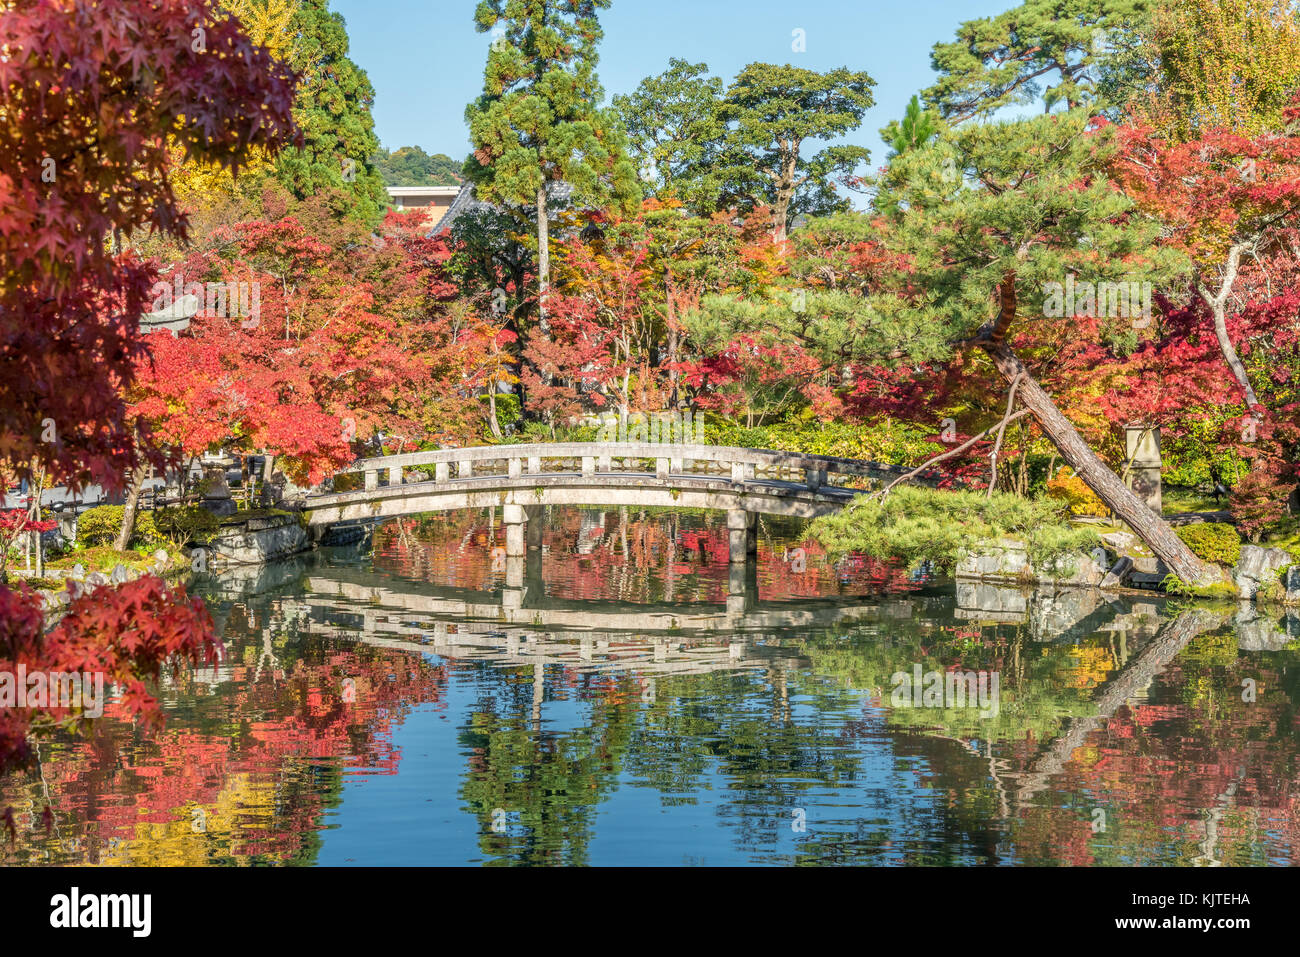 Schöne Herbstfarben, Falllaub und gorukaku Steinbrücke über den Hojo - Ike-Teich der Benten-cho Schrein. Zenrin Eikan-do-ji Temple. Kyoto, Japan Stockfoto